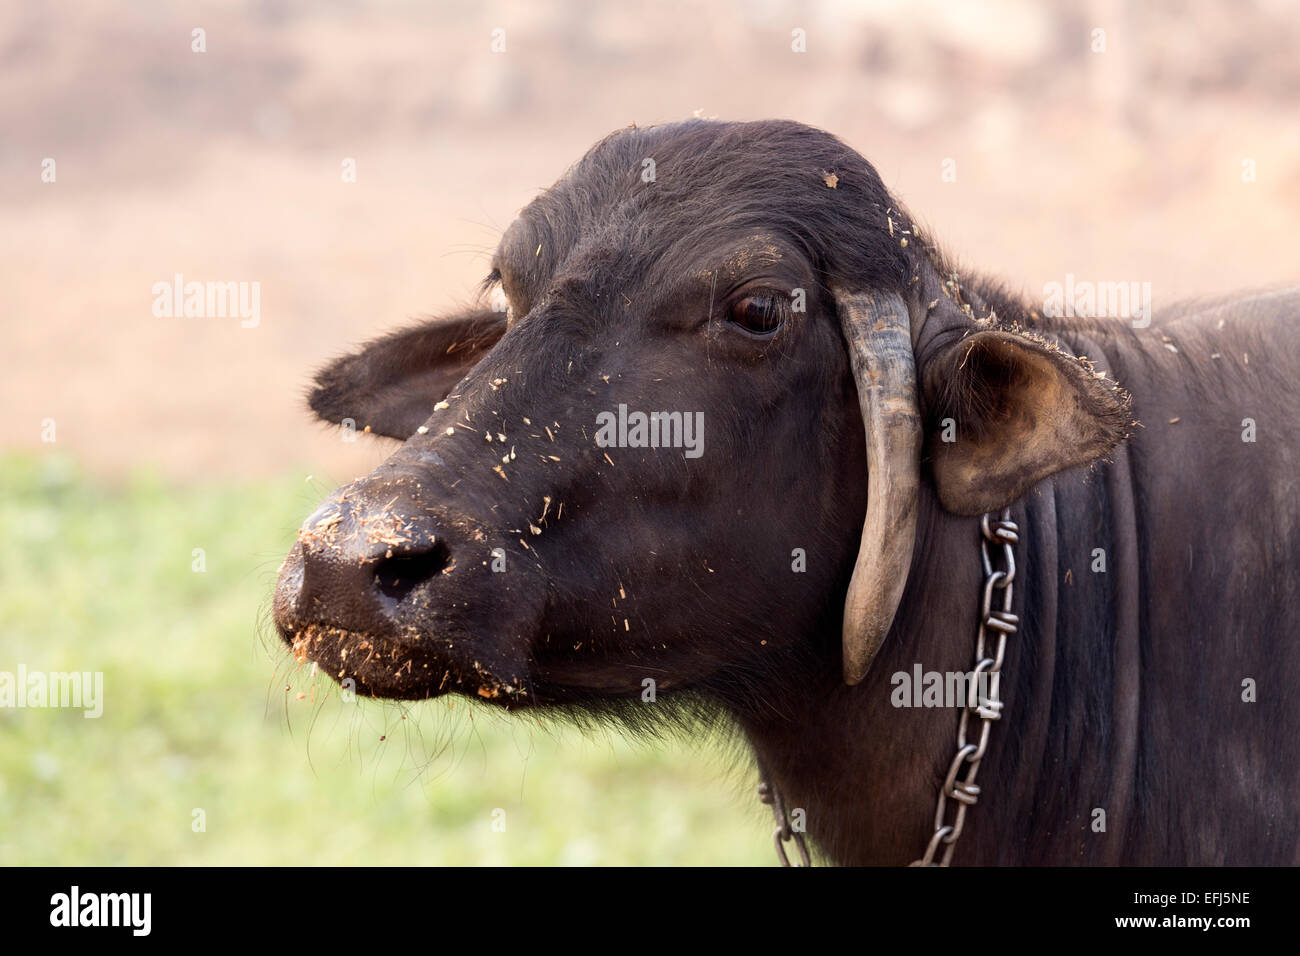 La India, Uttar Pradesh, Agra, cerca de la cabeza de búfalo con forraje alrededor de las fosas nasales Foto de stock